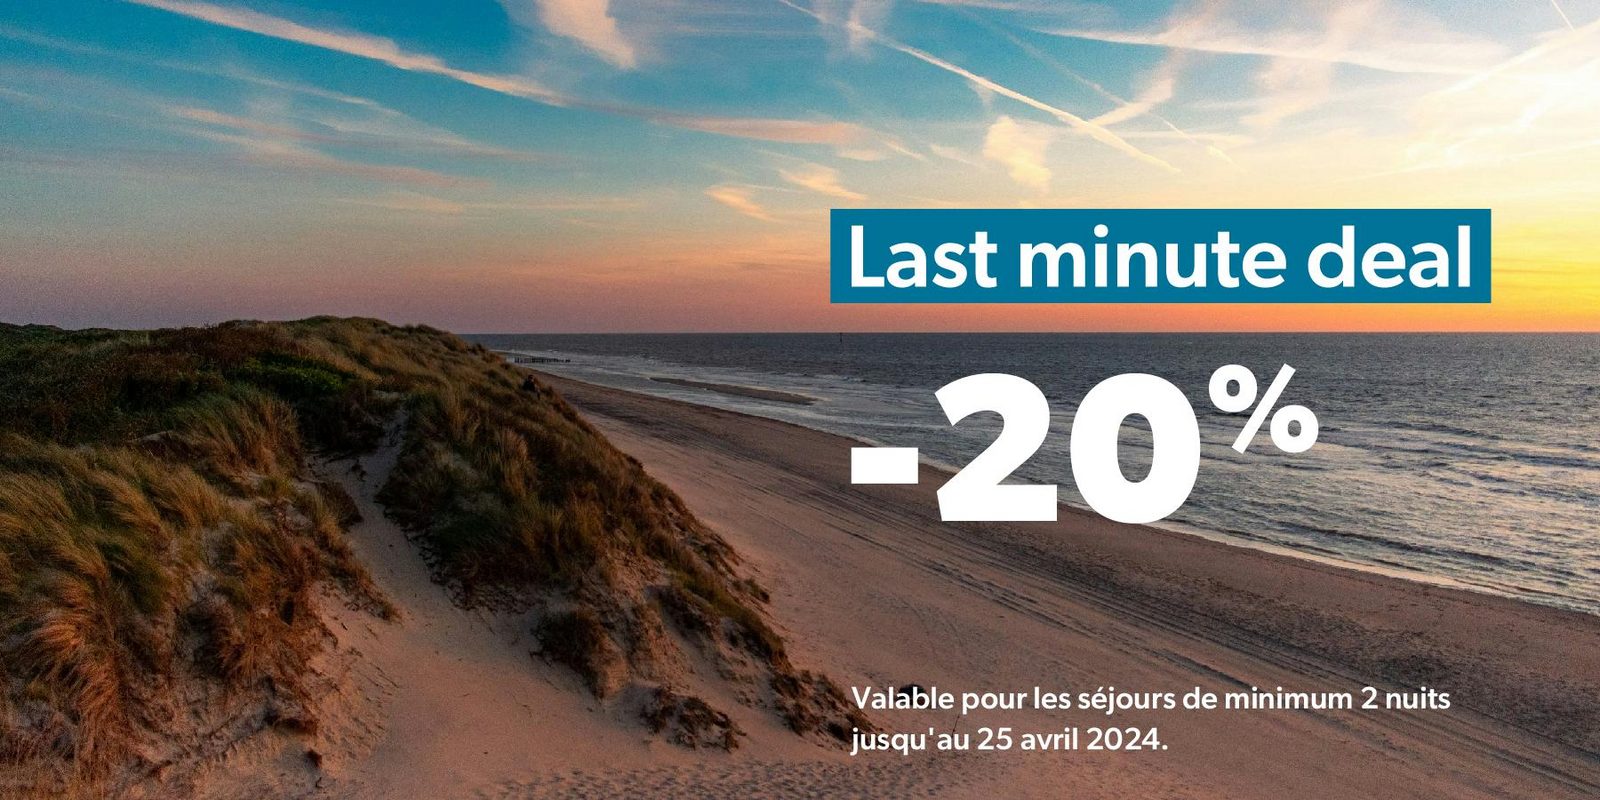 Offre de dernière minute : 20% de réduction pour un séjour de minimum 2 nuits, valable jusqu'au 30 avril 2024